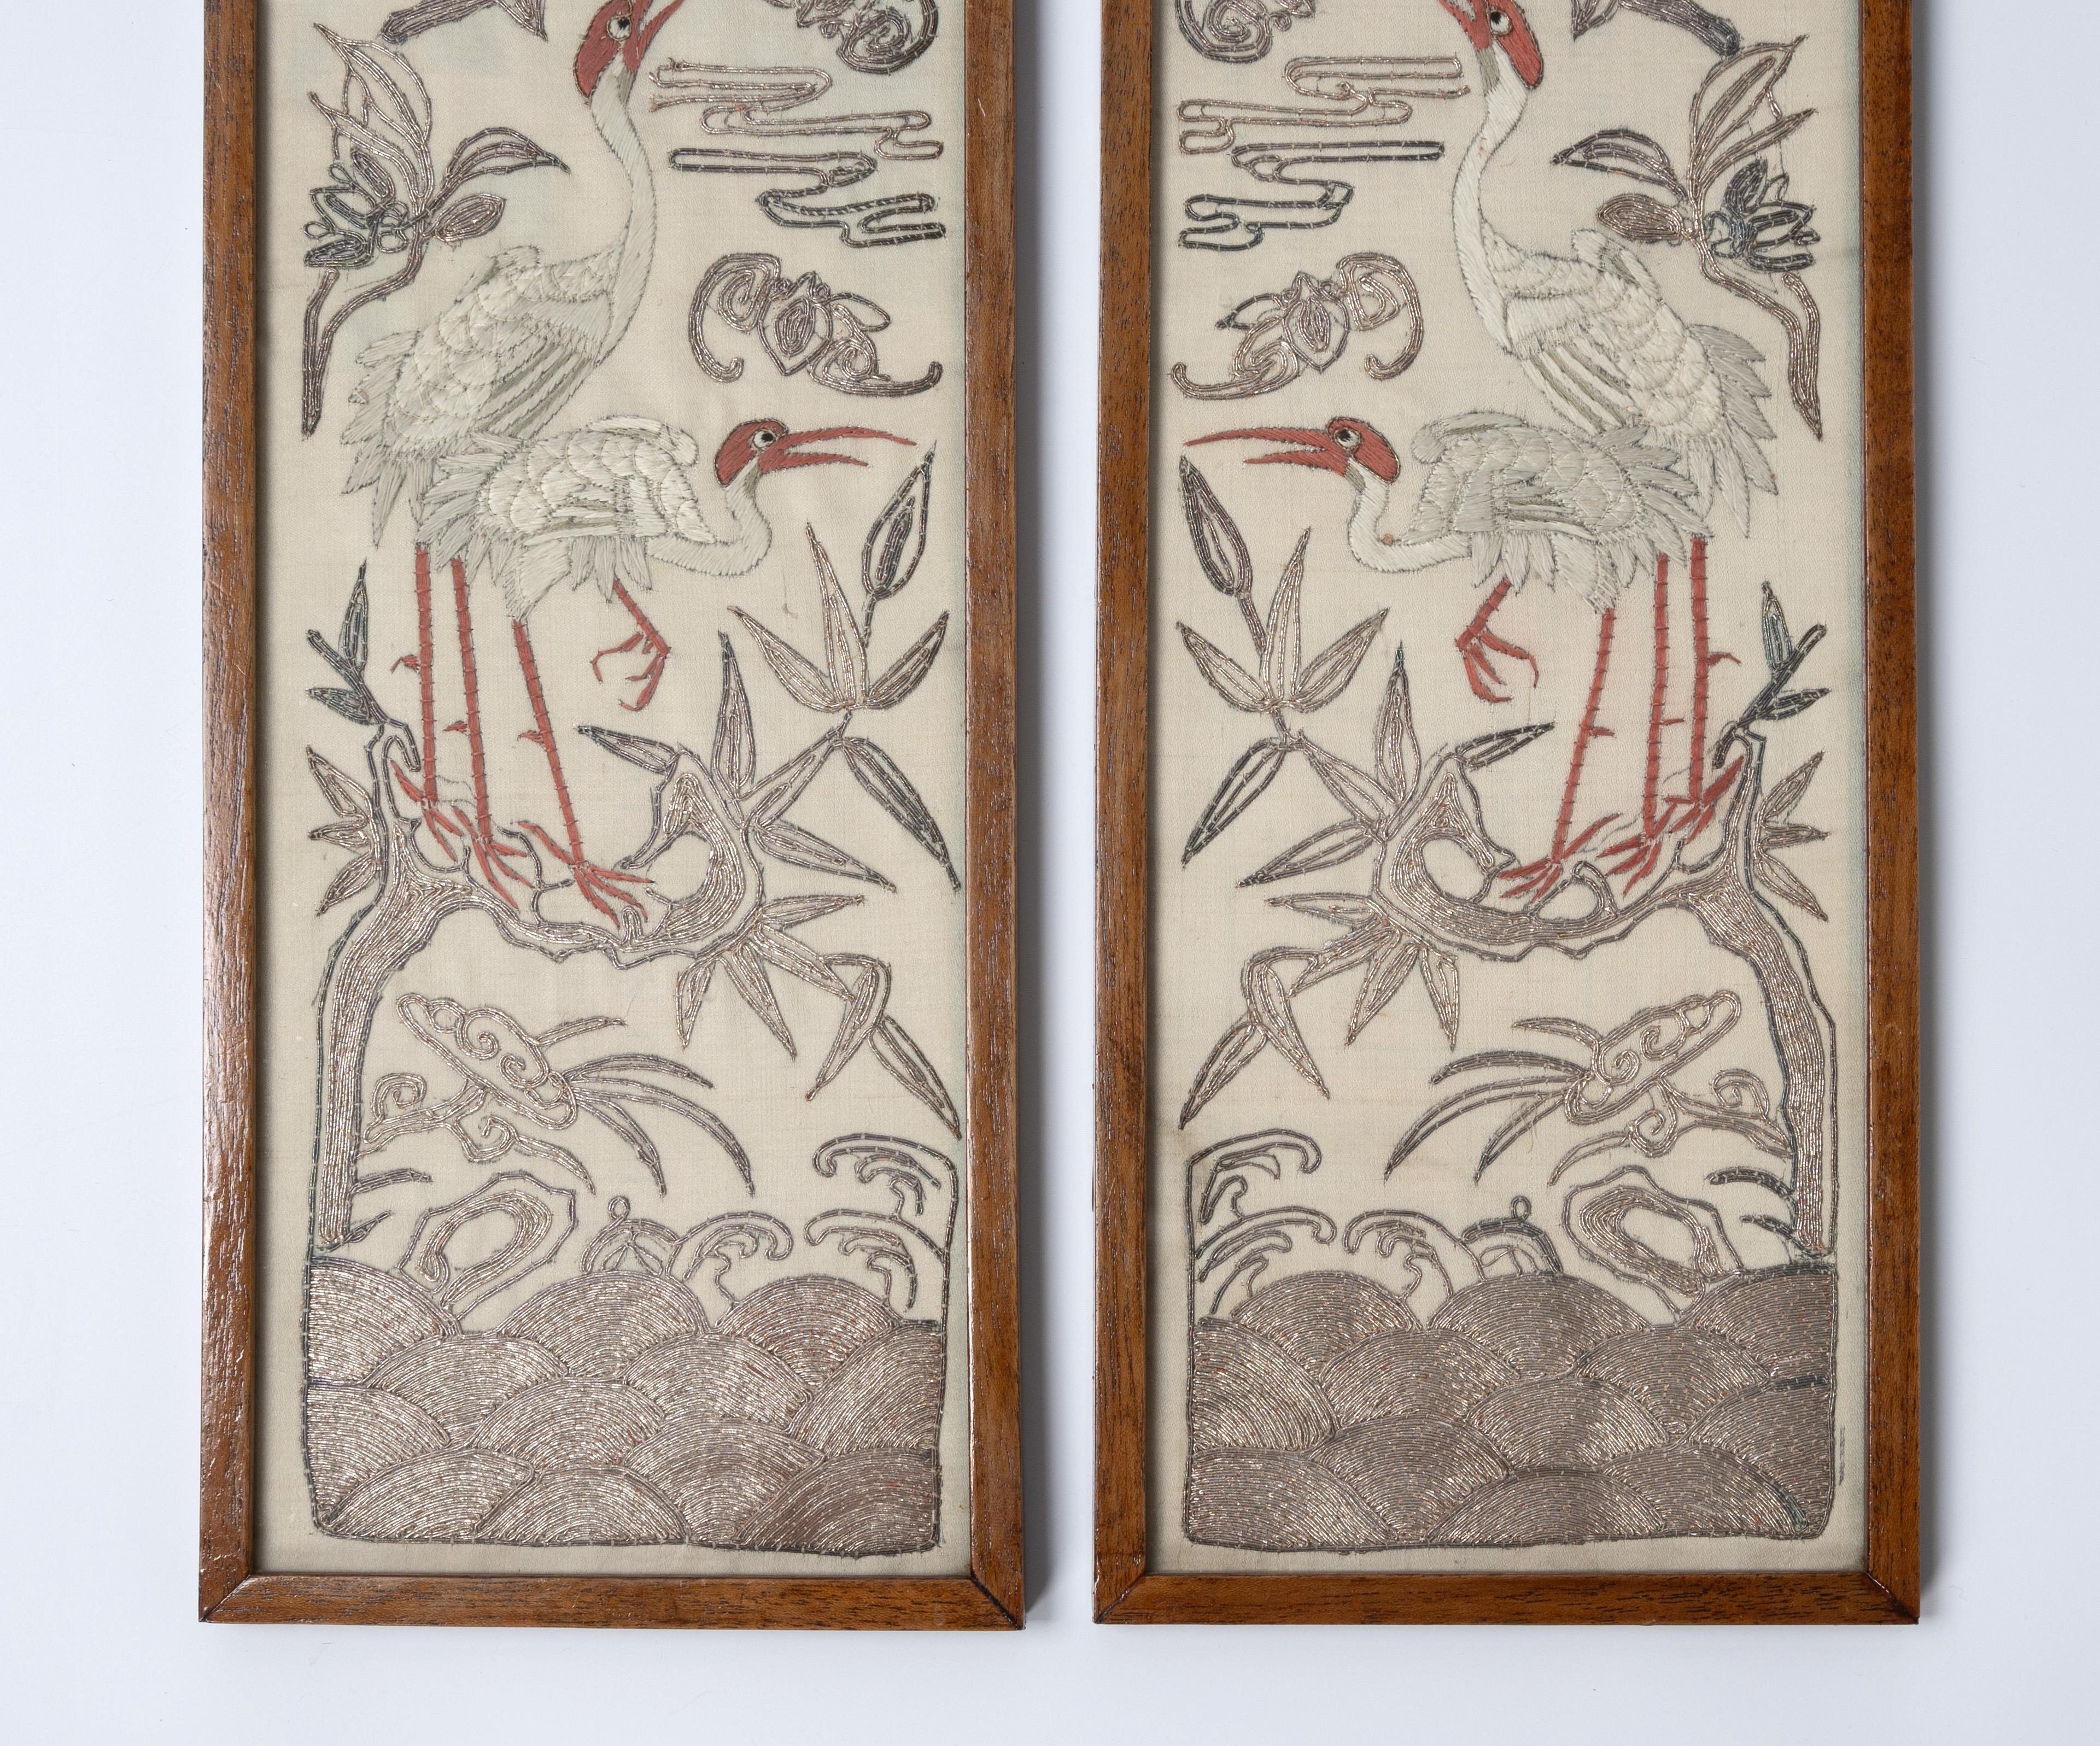 PAIRE DE PANNEAUX EN SILK CHINOIS EMBROIDÉS 19ème siècle, Dynastie Qing
Chaque œuvre représente un couple de grues perchées au sommet d'une branche feuillue au-dessus de vagues déferlantes, montées dans des cadres émaillés, 40,5 x 14 cm (2).
Très